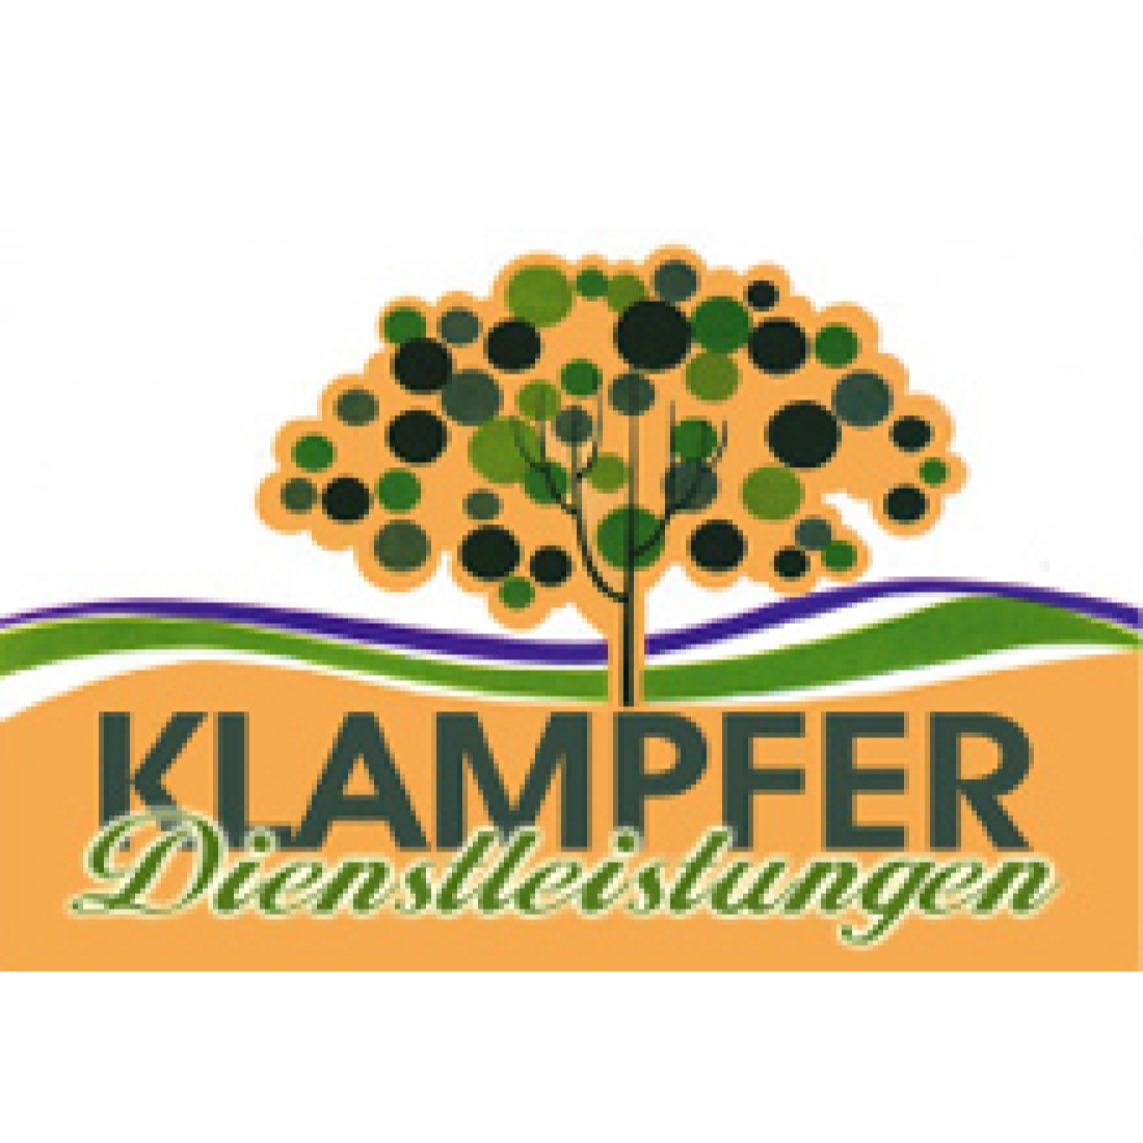 Klampfer Dienstleistungen GmbH